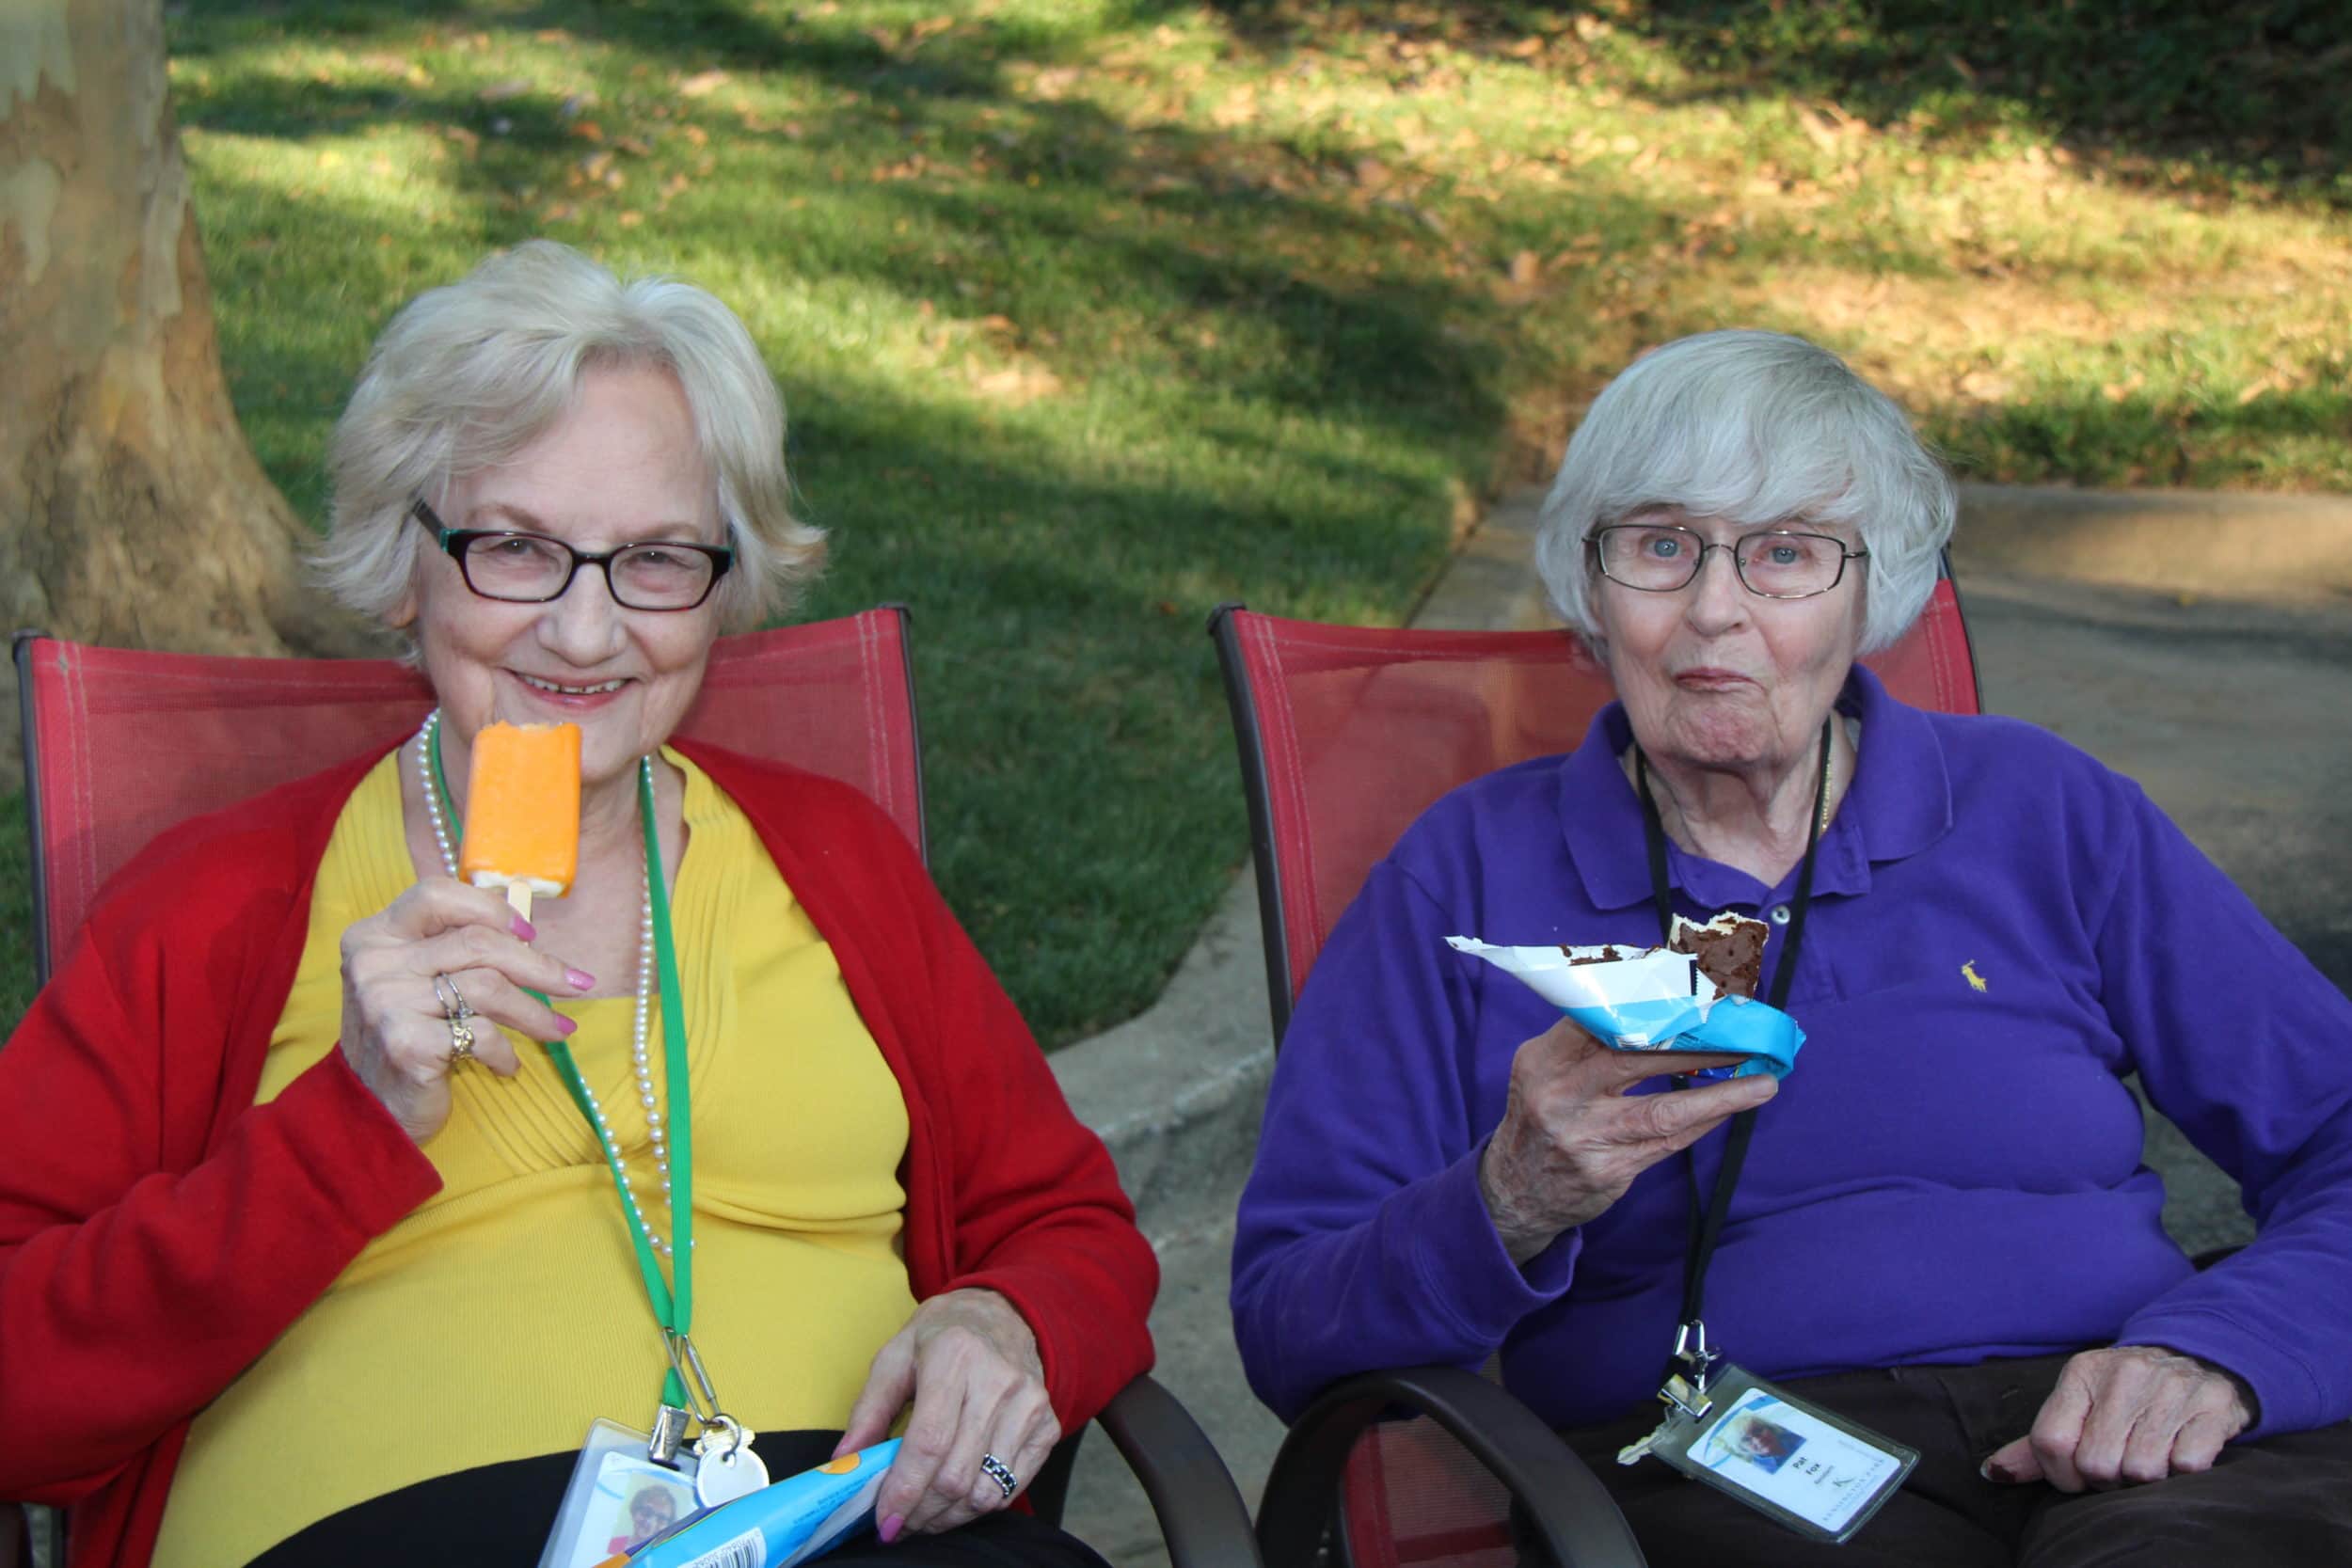 Two residents enjoy frozen treats at Kensington Park.